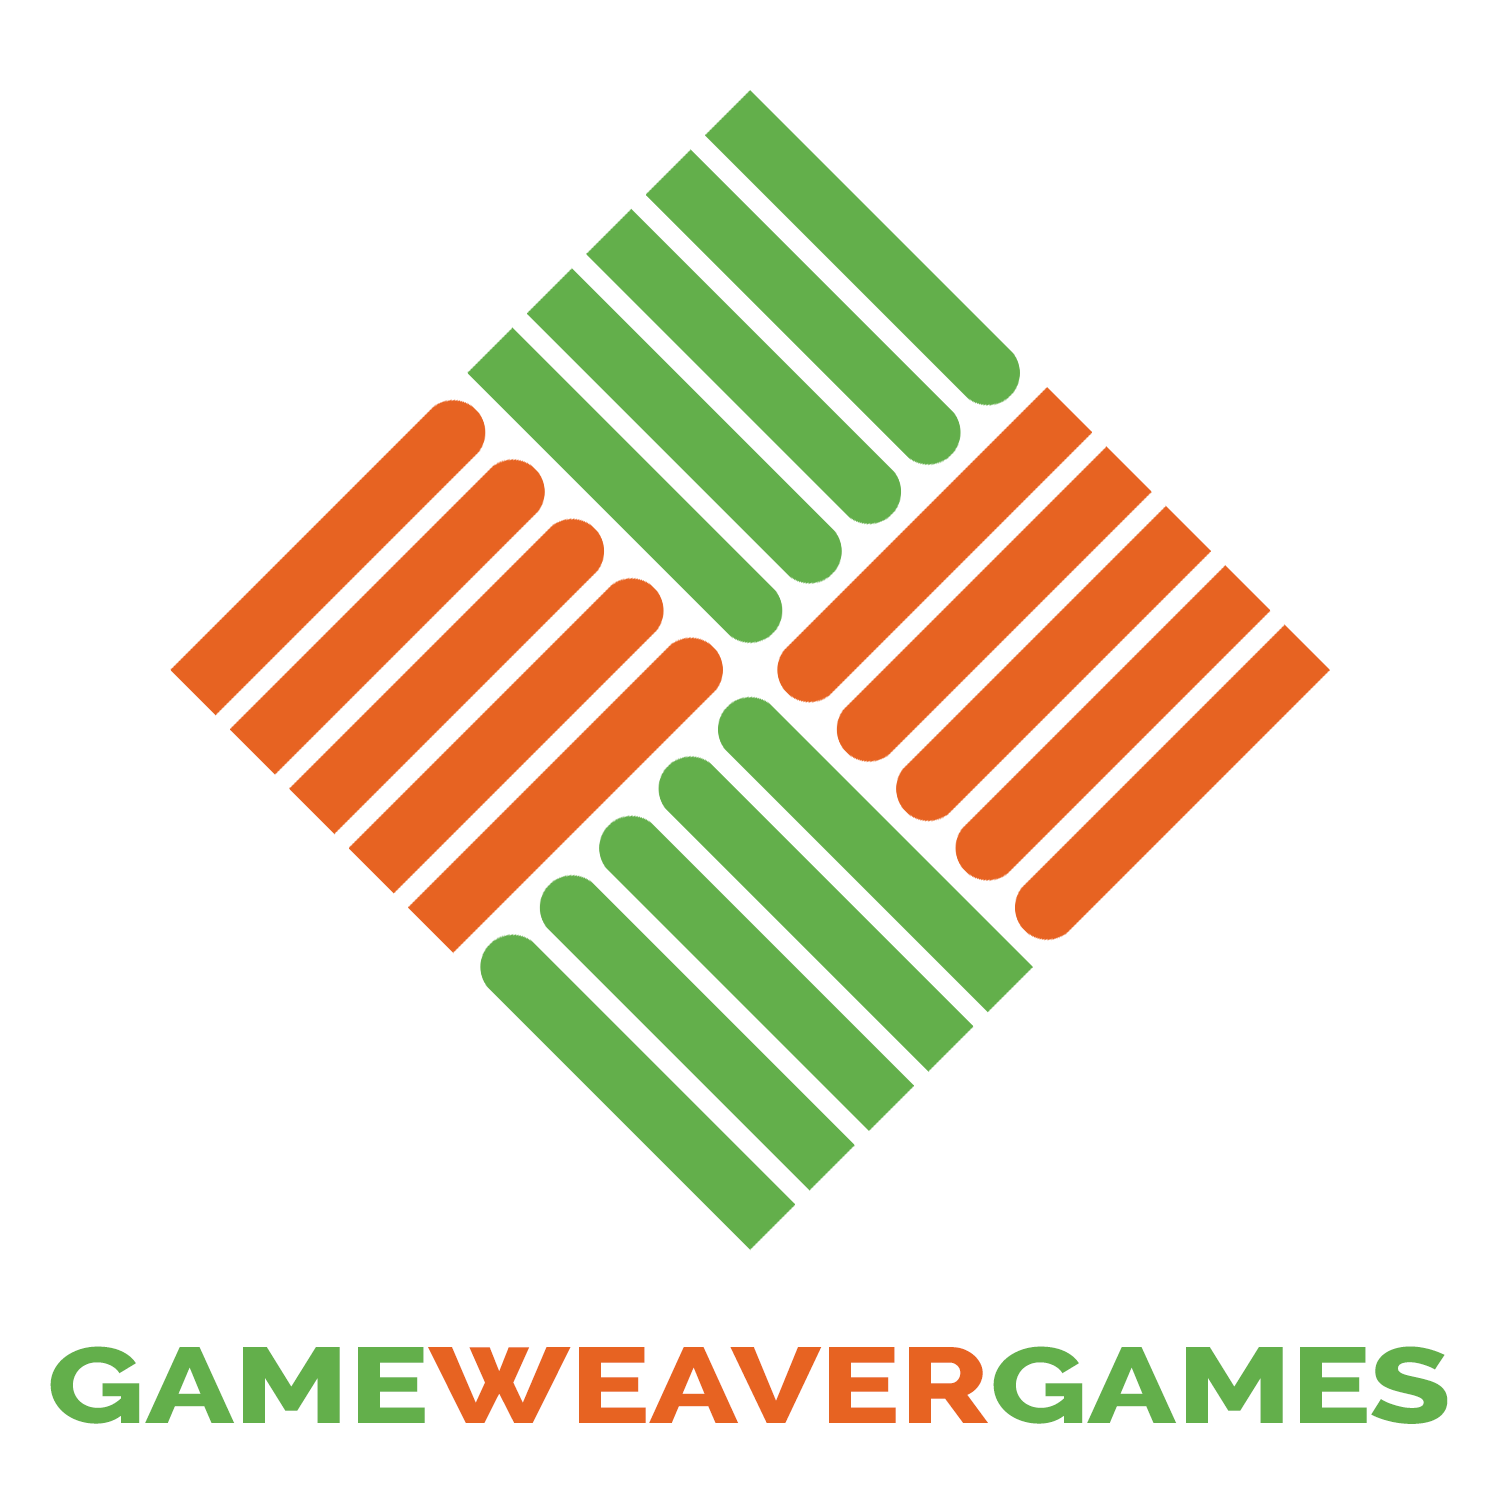 GameWeaver Games